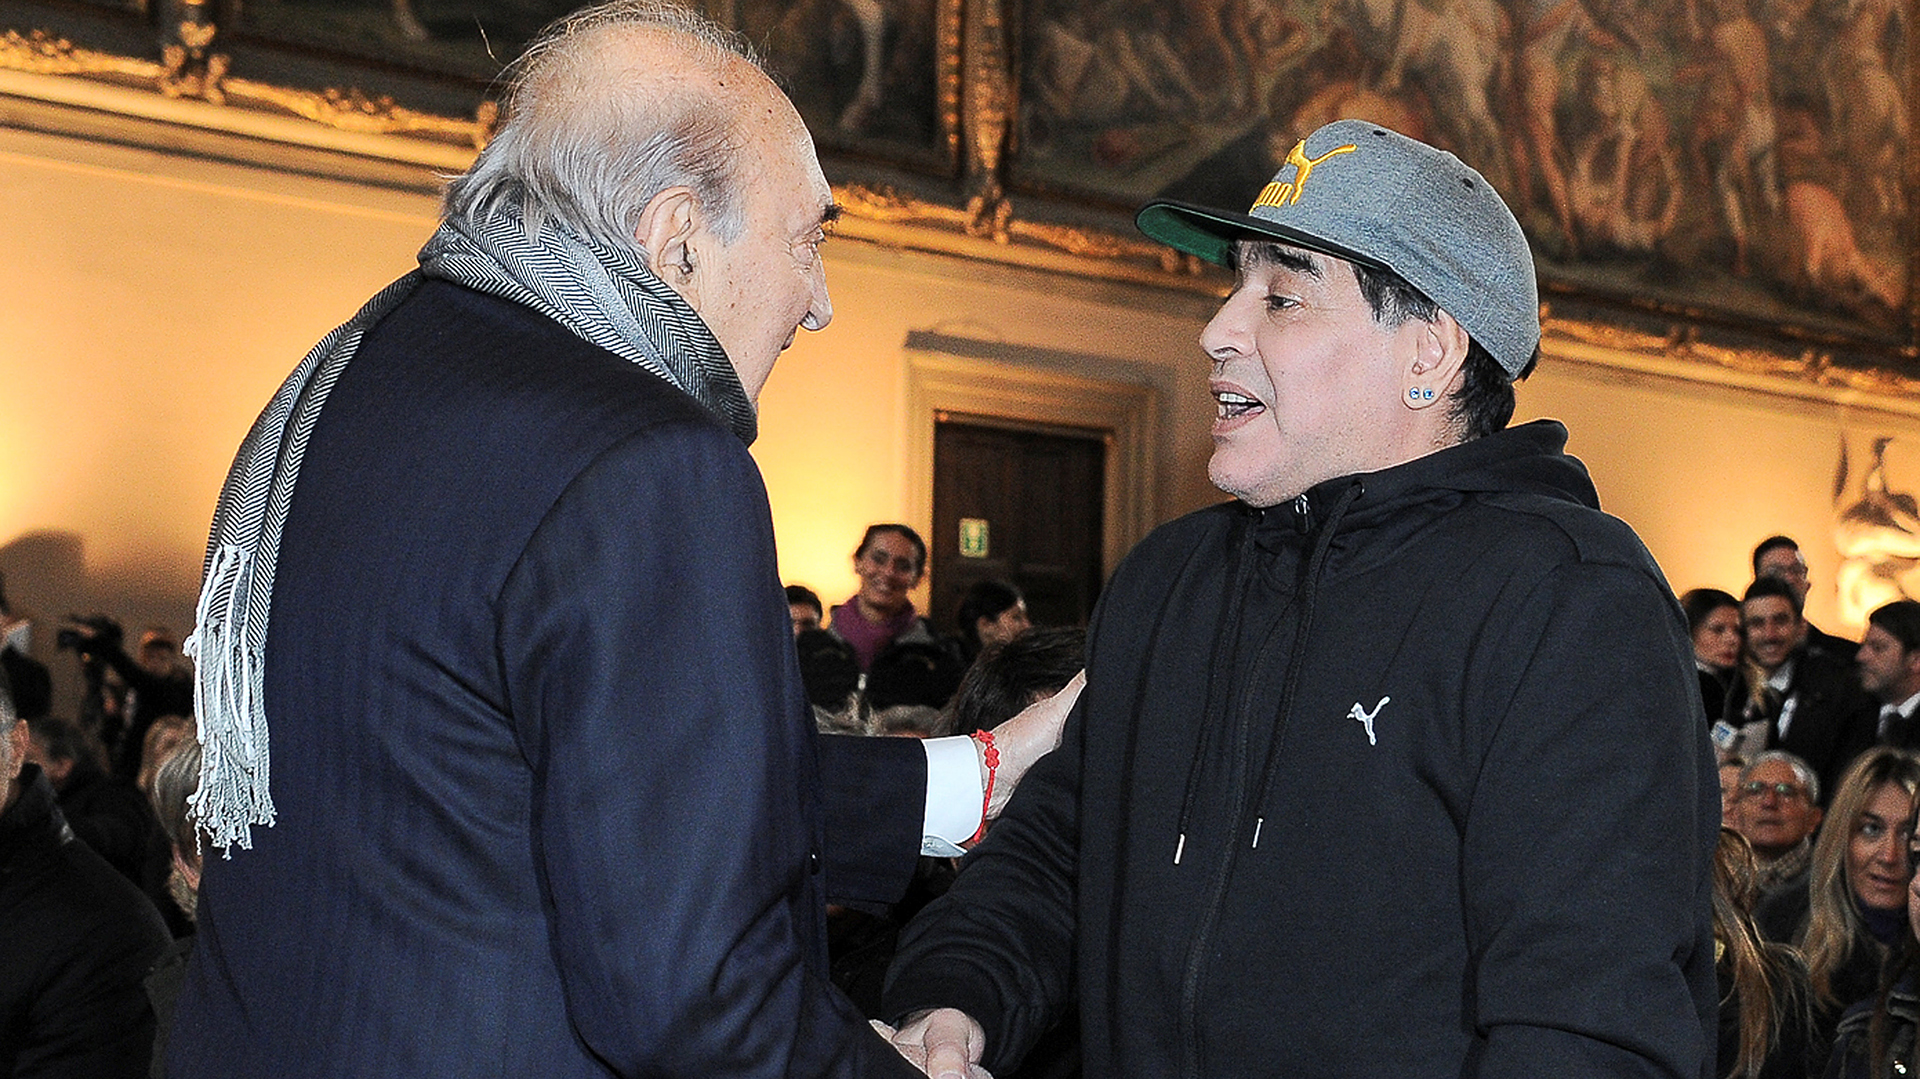 Reencuentro histórico. Diego Armando Maradona estrecha la mano con Corrado Ferlaino, ex mandatario de Napoli, muchos años después de la discusión por su partida 